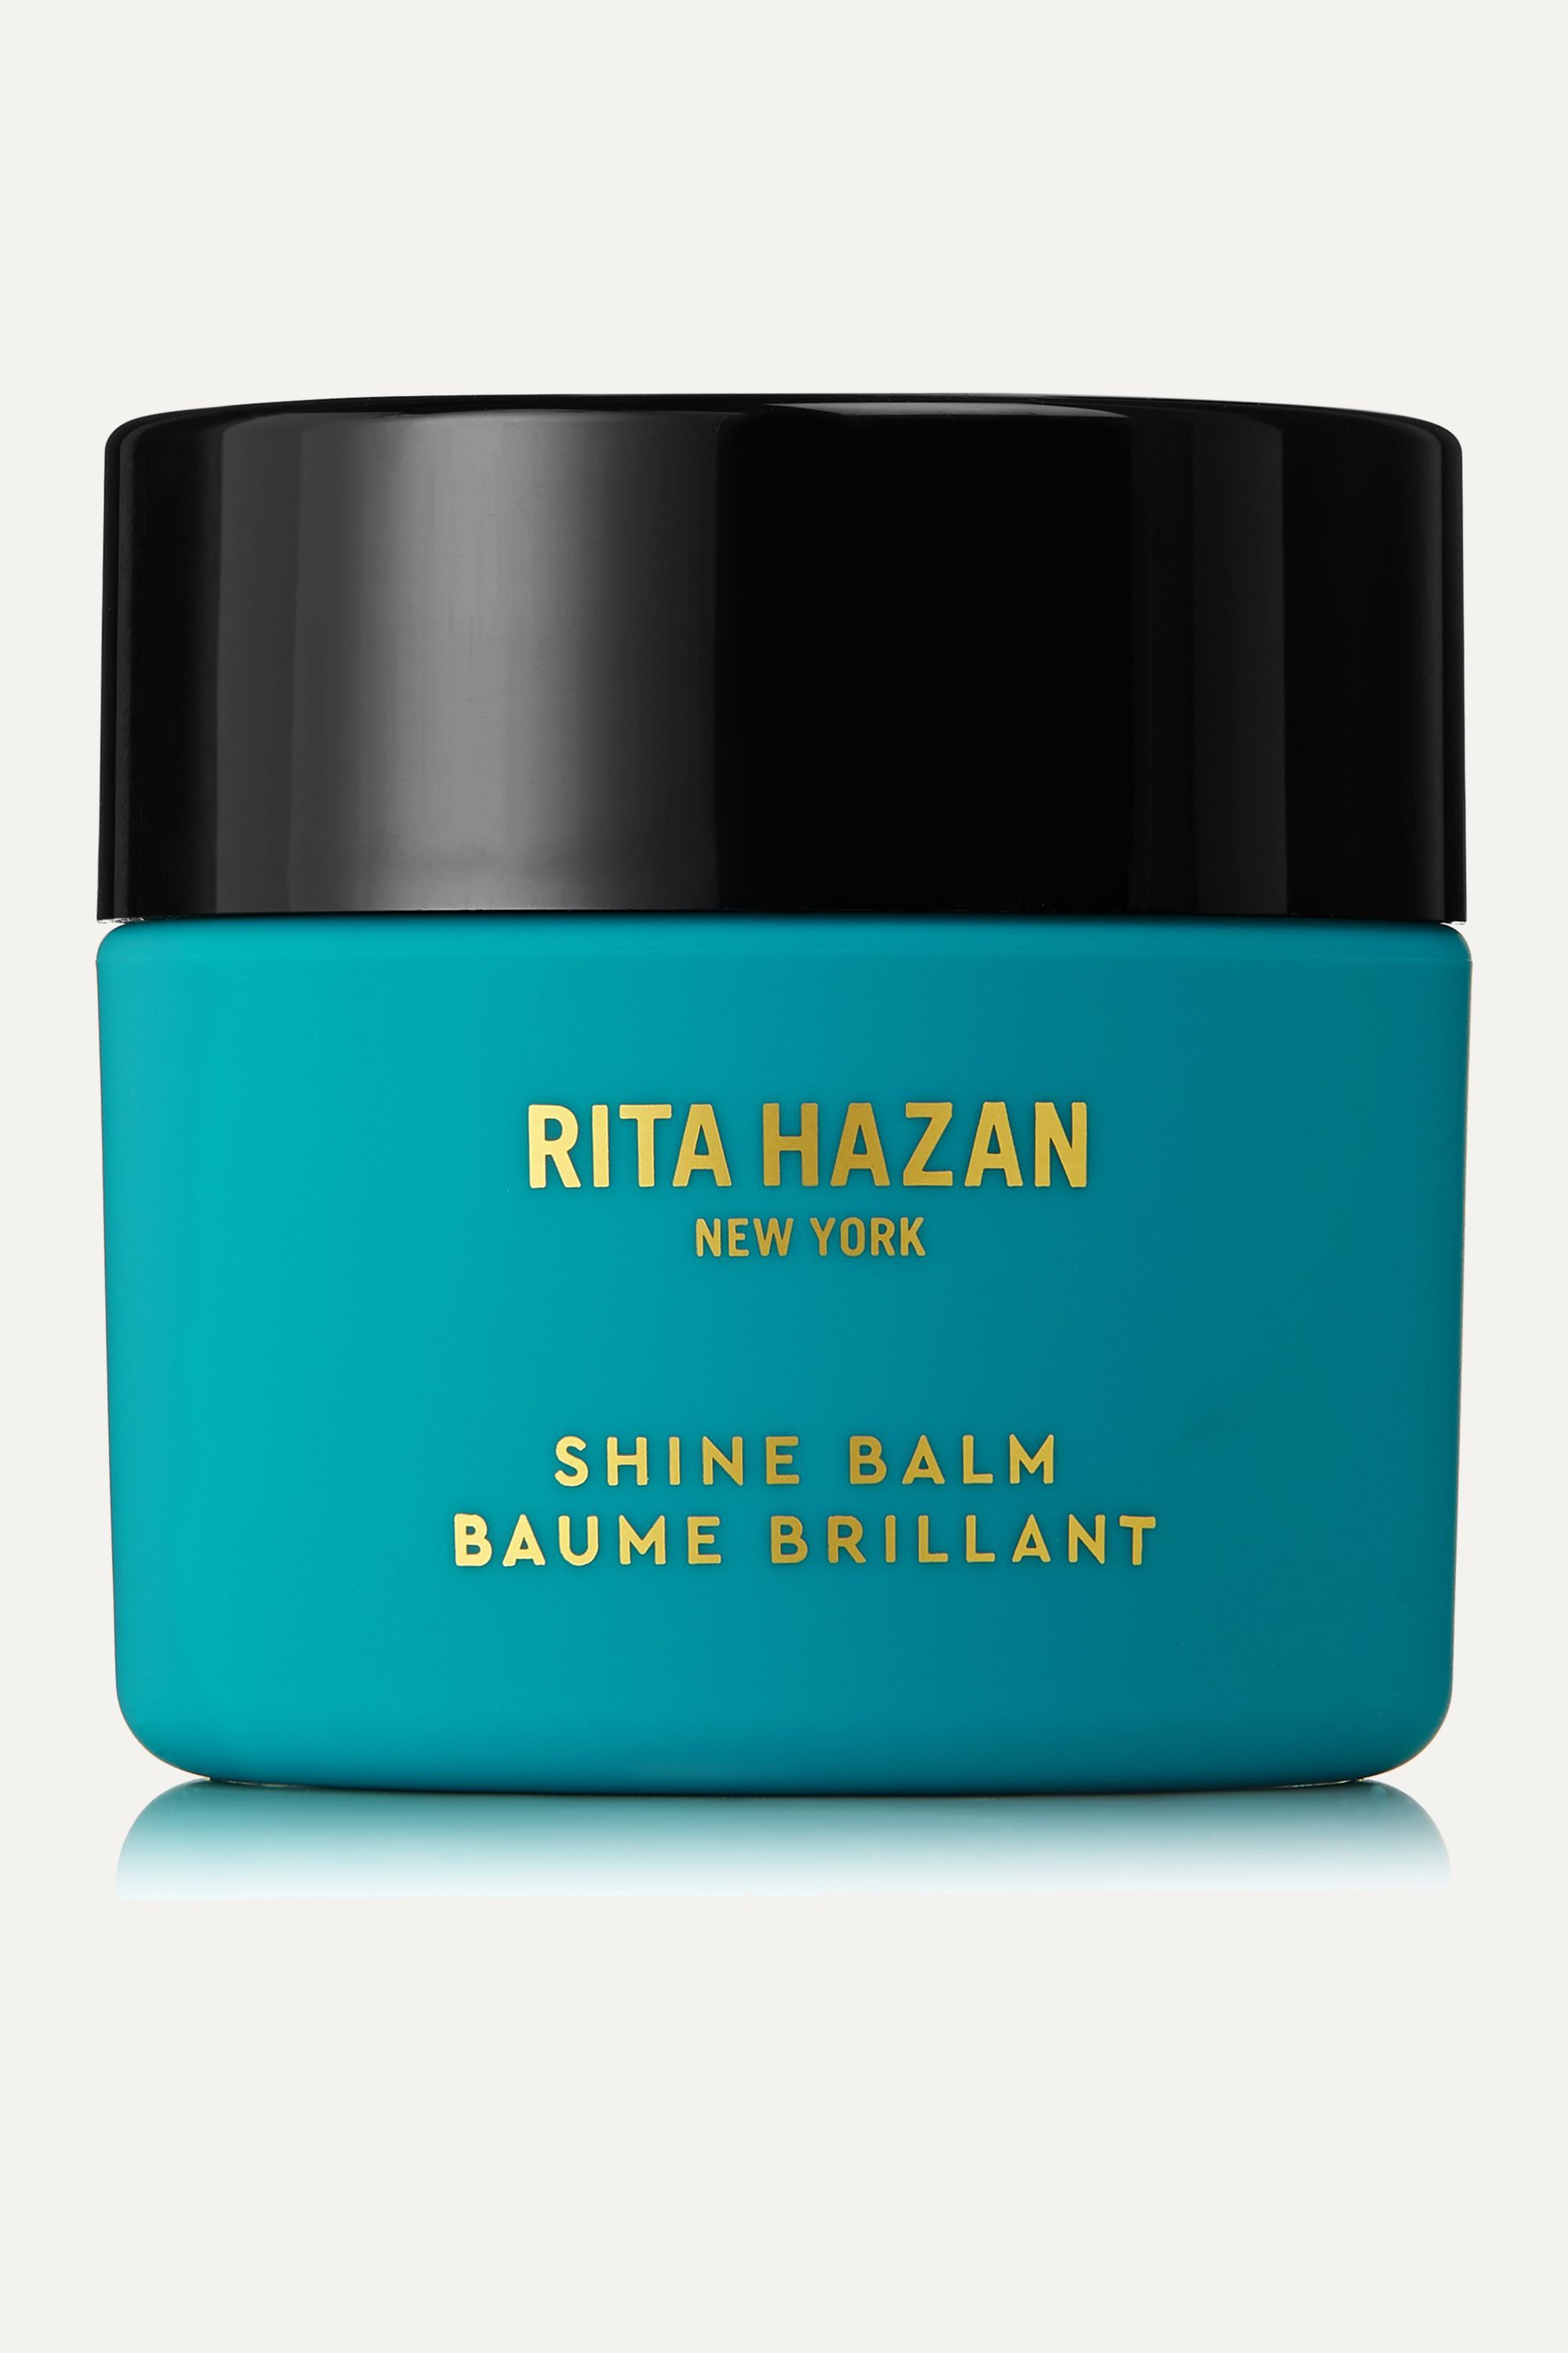 Rita Hazan Shine Balm